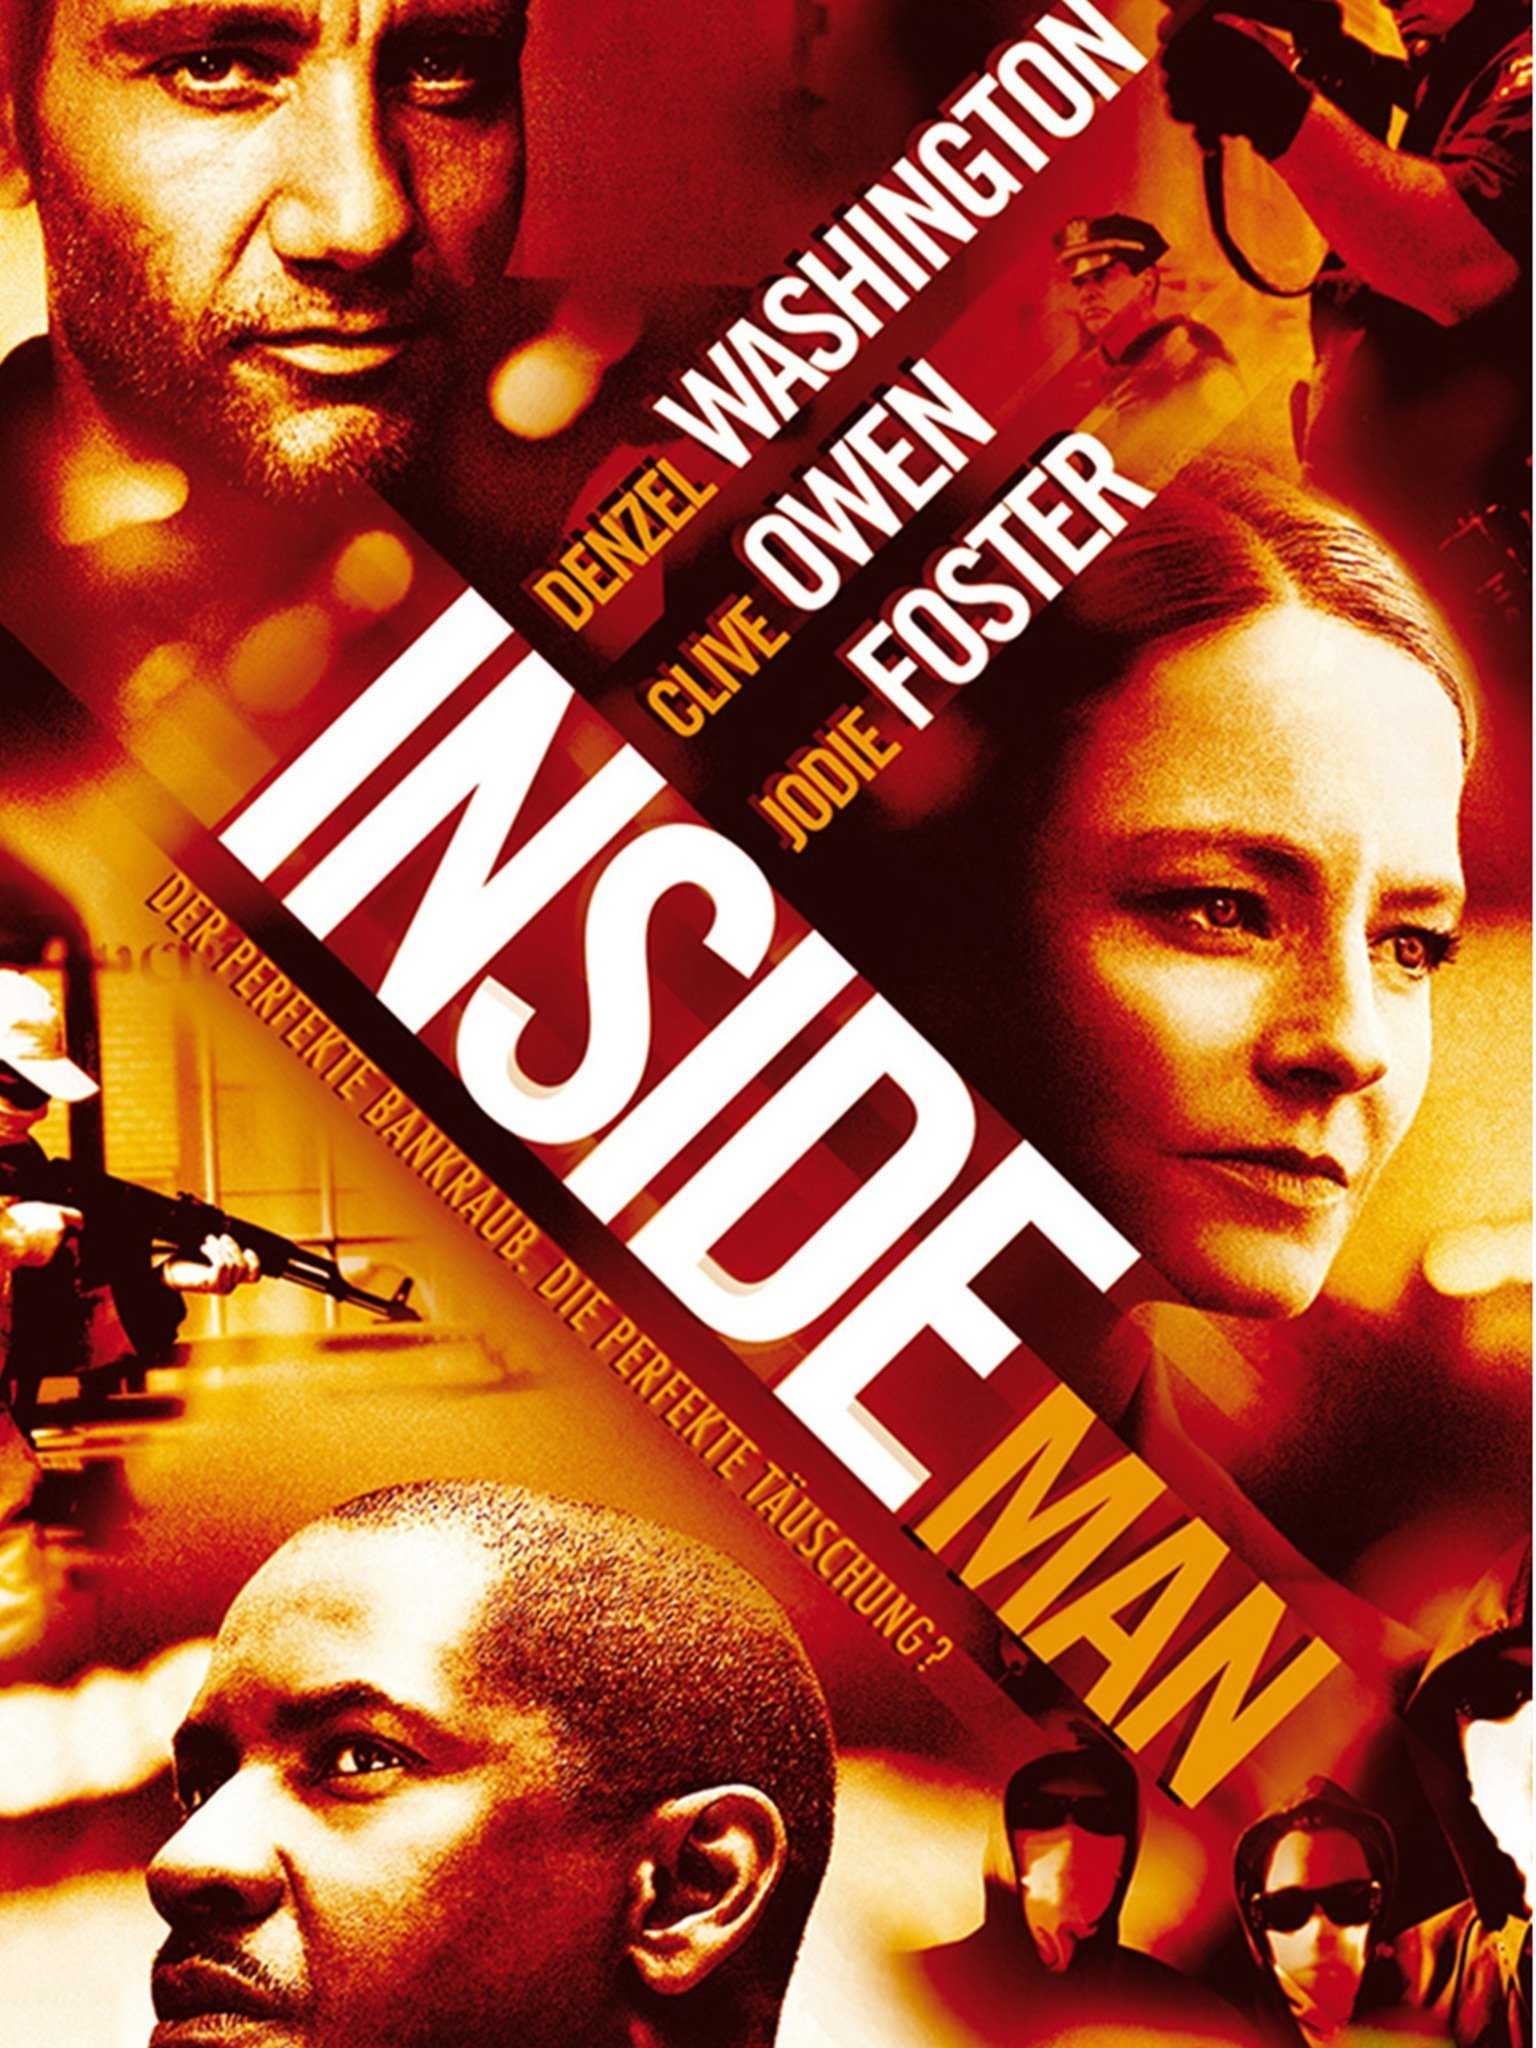 Inside Man Poster